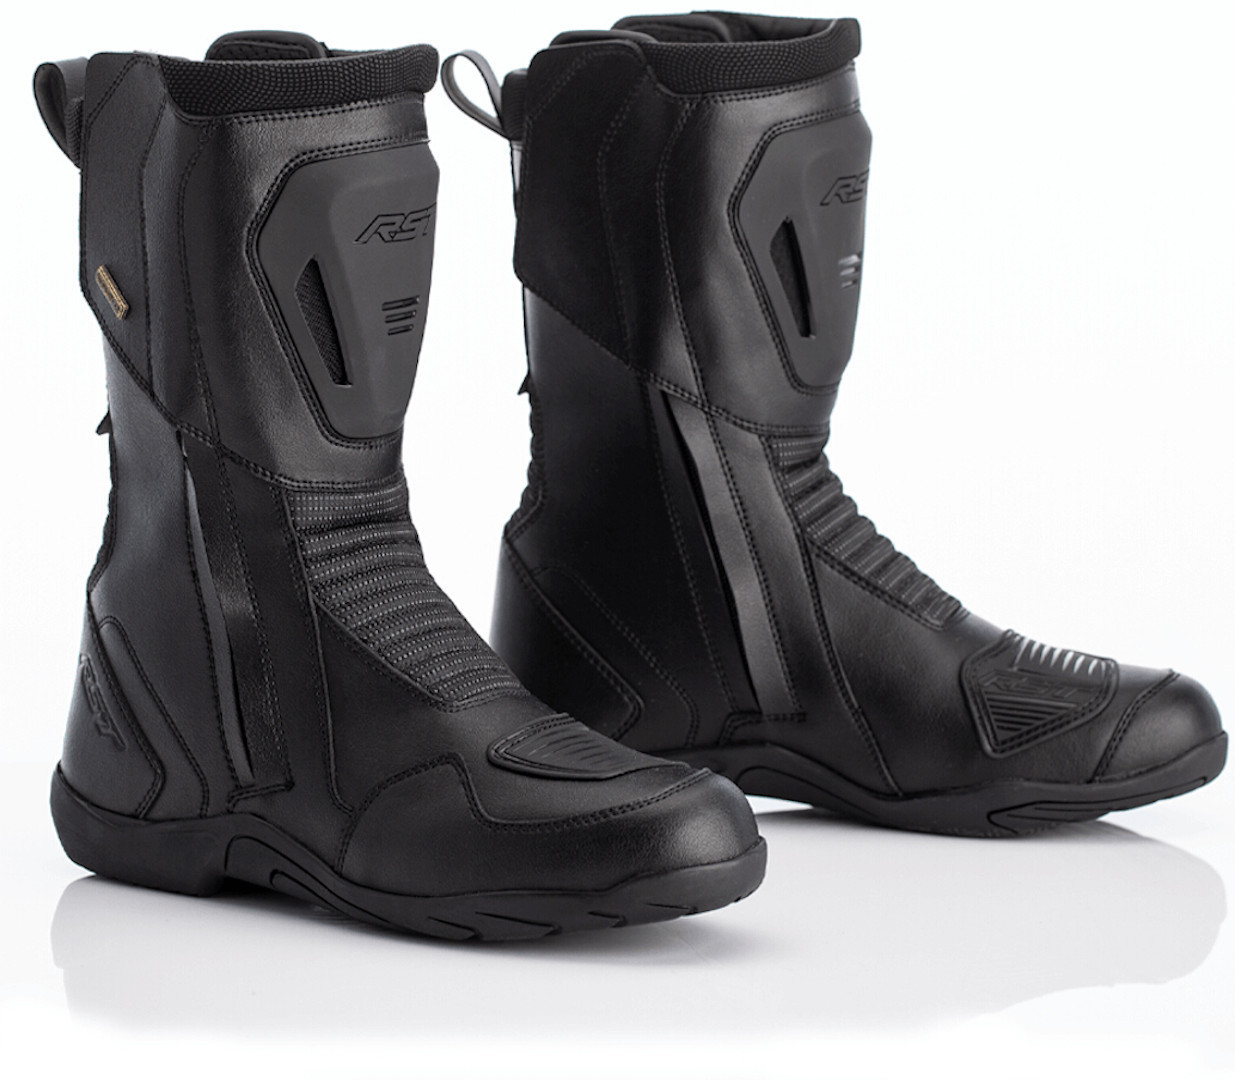 RST Stunt Boots. Pathfinder ботинки кремовый. RST Stunt боты.